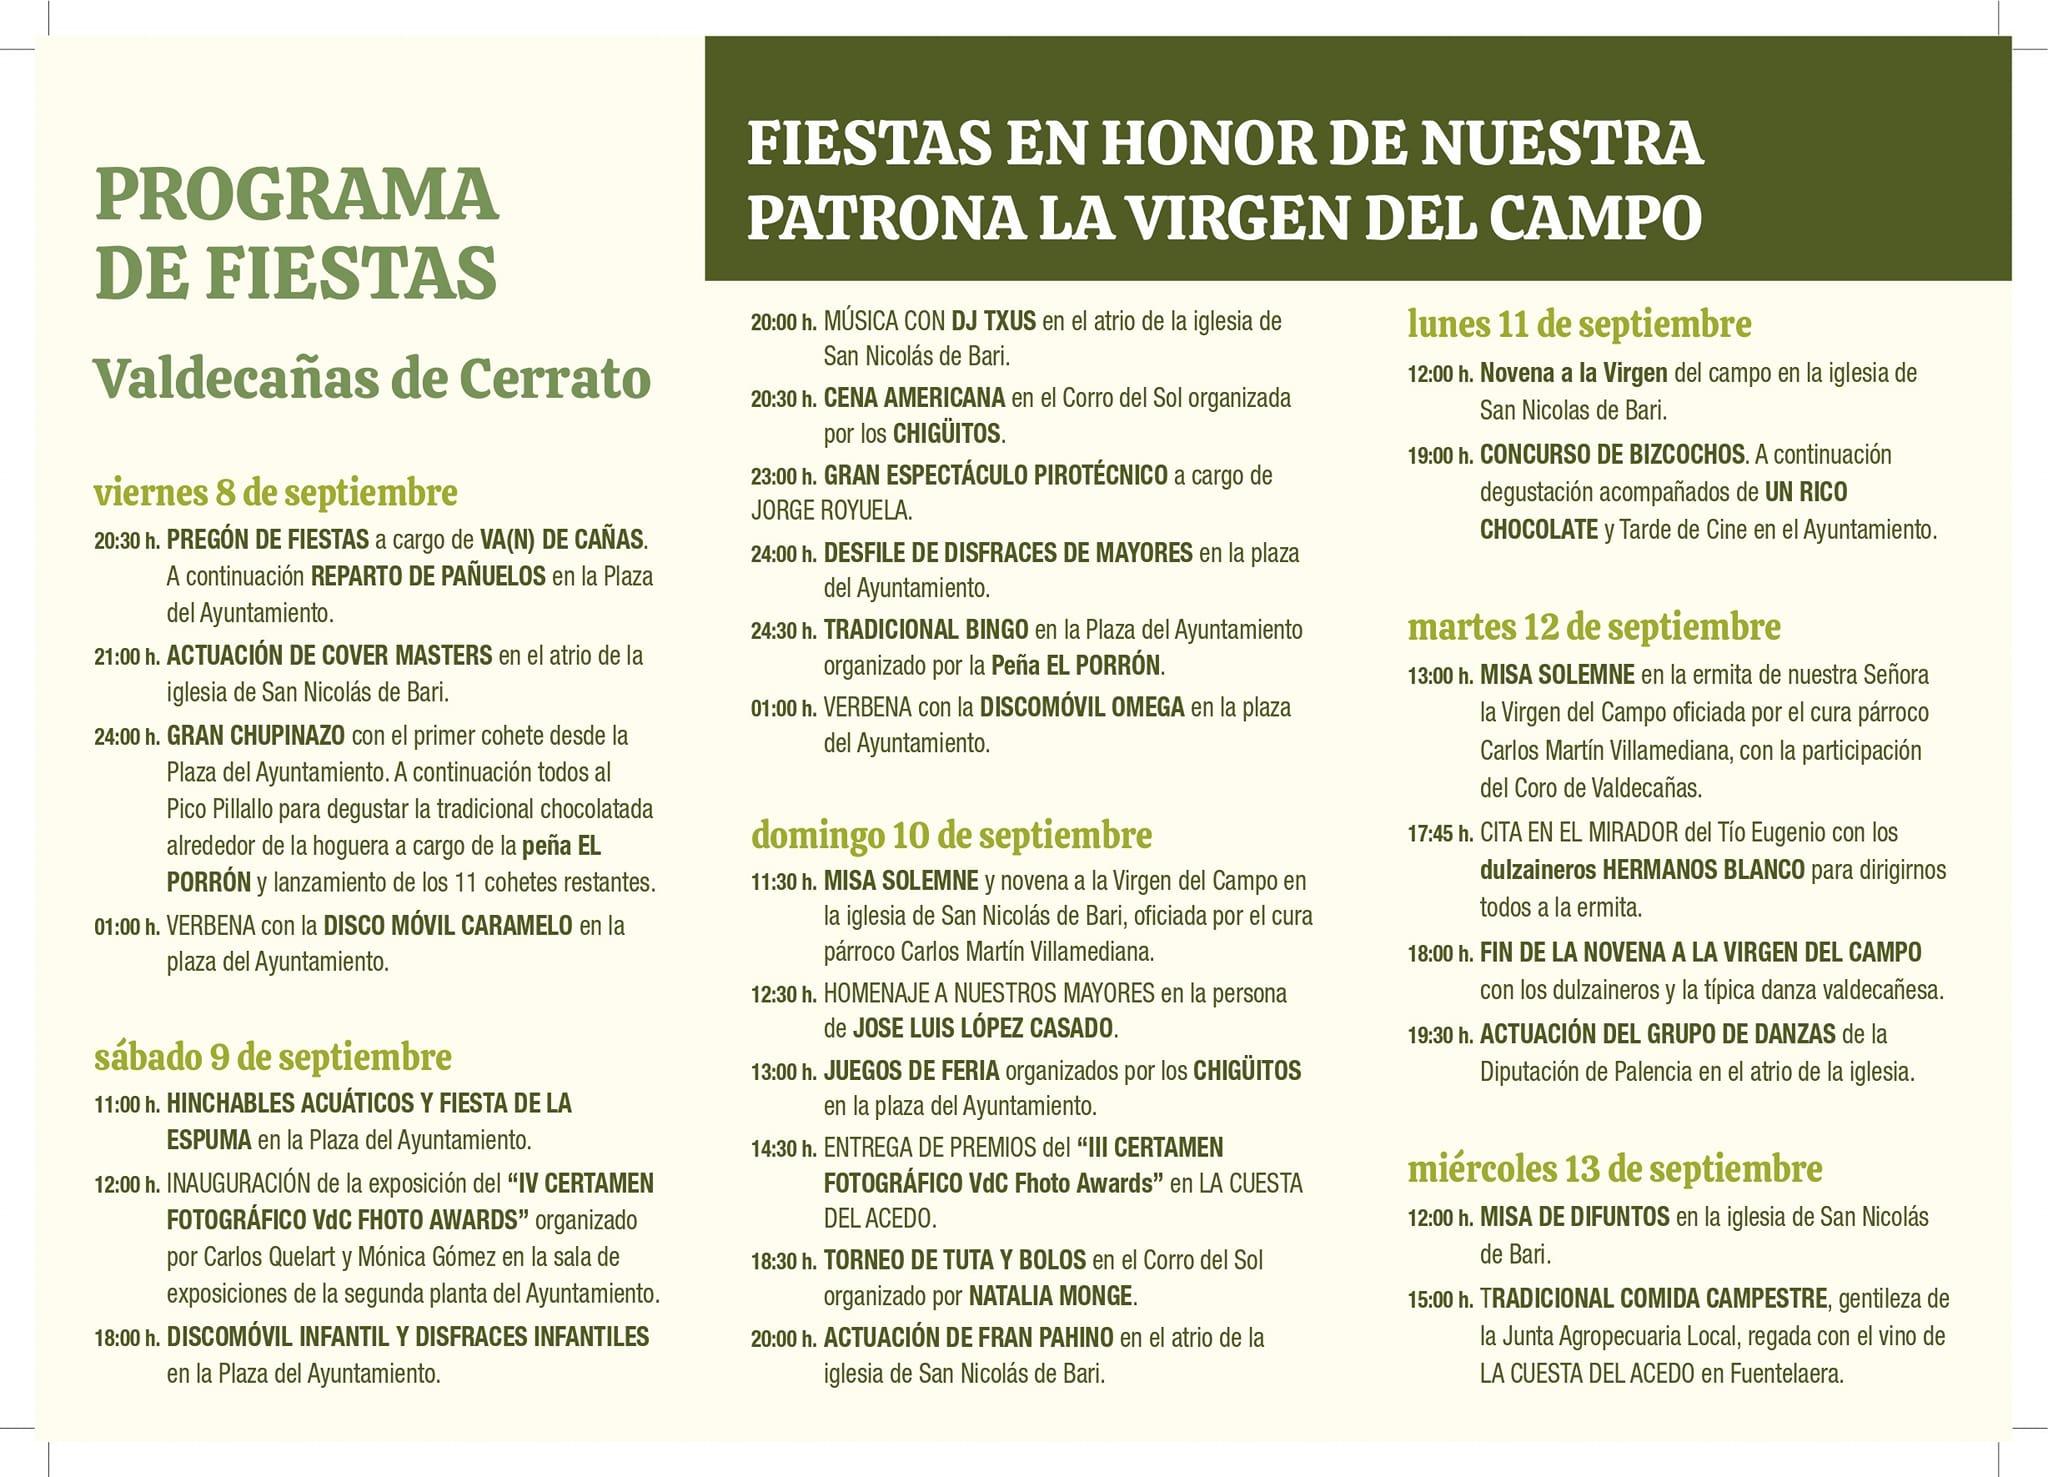 Fiestas en Honor a la Virgen del Campo - Valdecañas de Cerrato1